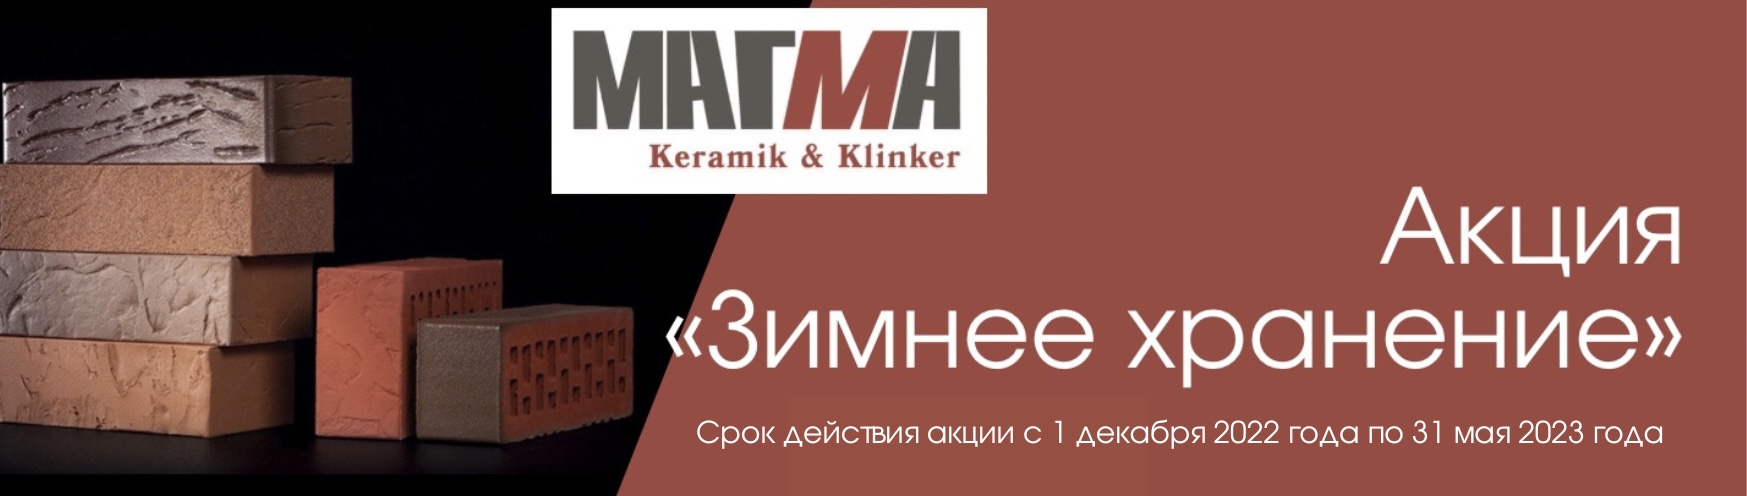 Зимнее хранение 22-23 от Магма Keramik & Klinker